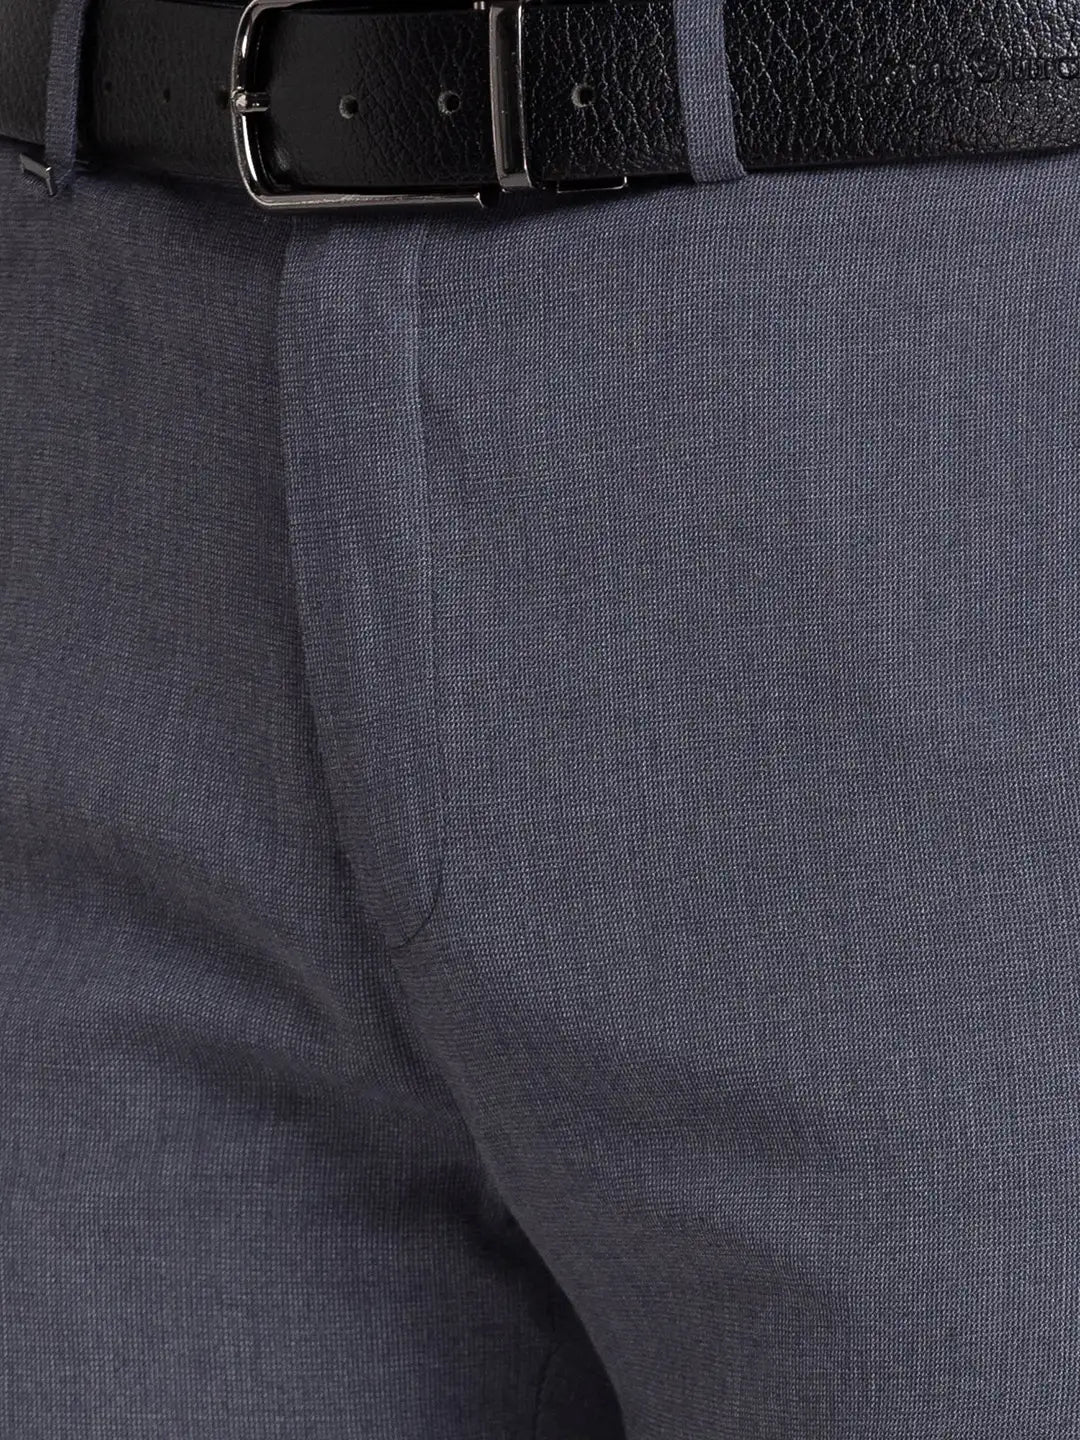 Men Contemporary Fit Khaki Trouser